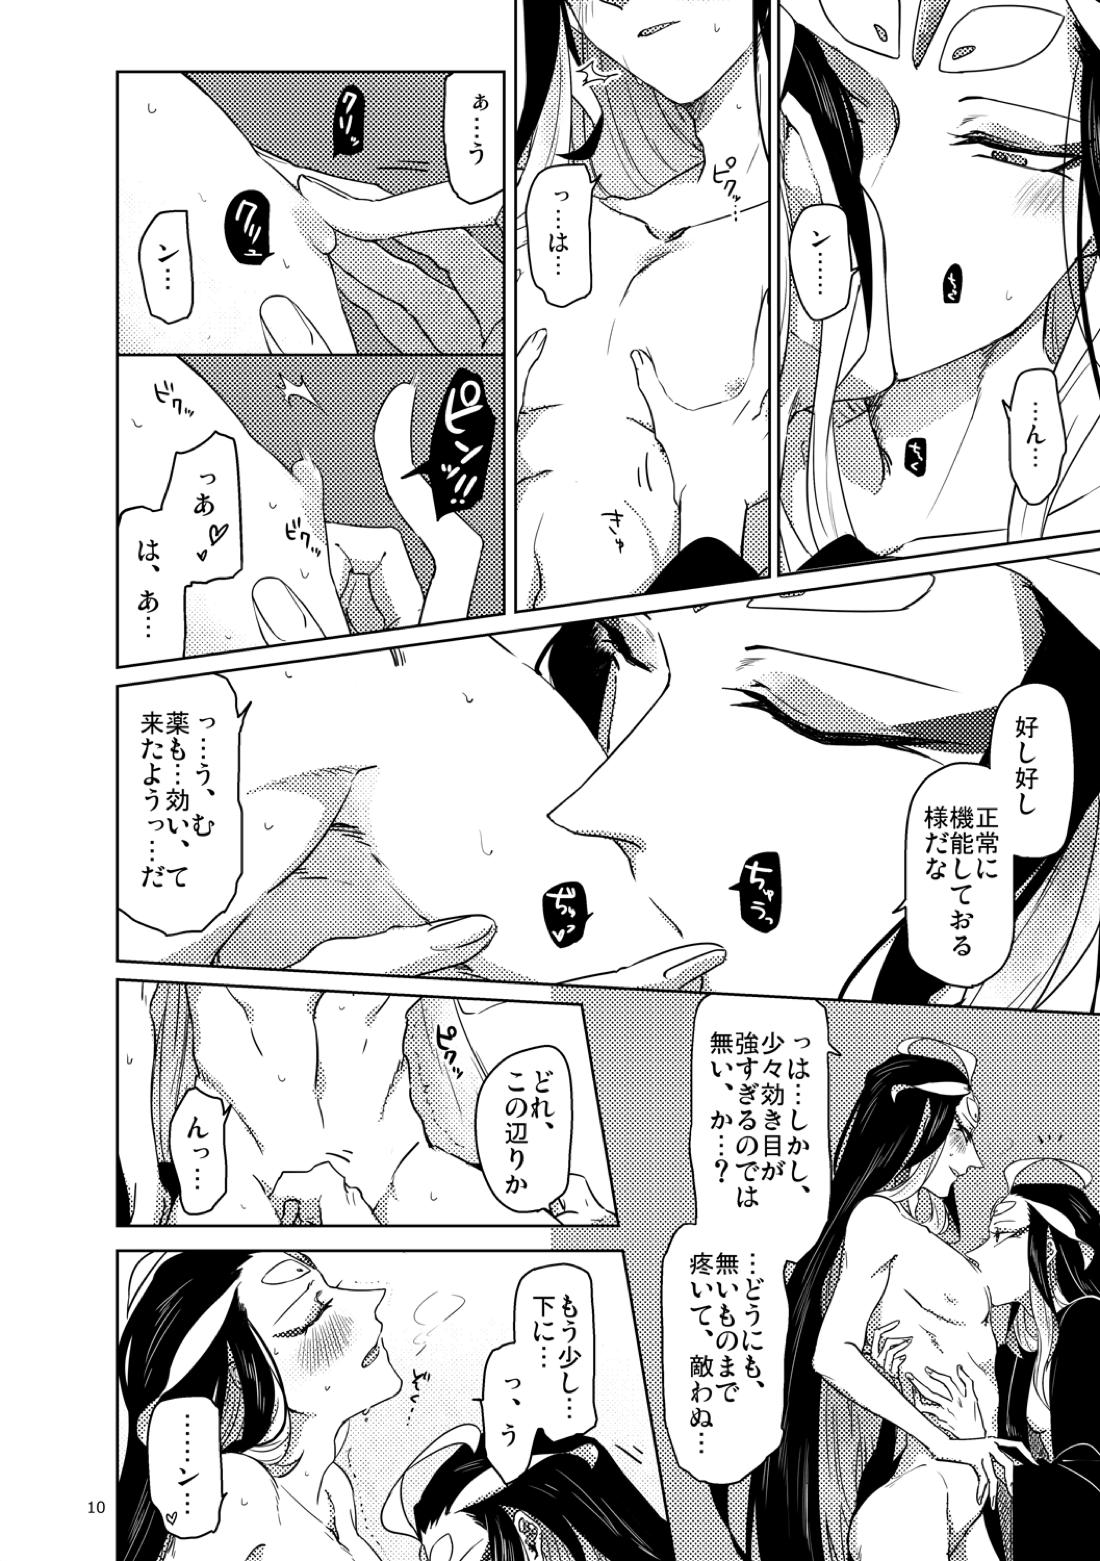 【BL漫画 Fate/Grand Order】男性体と無性体の始皇帝が同期するために媚薬を口にしながら肌を重ねるイチャイチャボーイズラブエッチ11